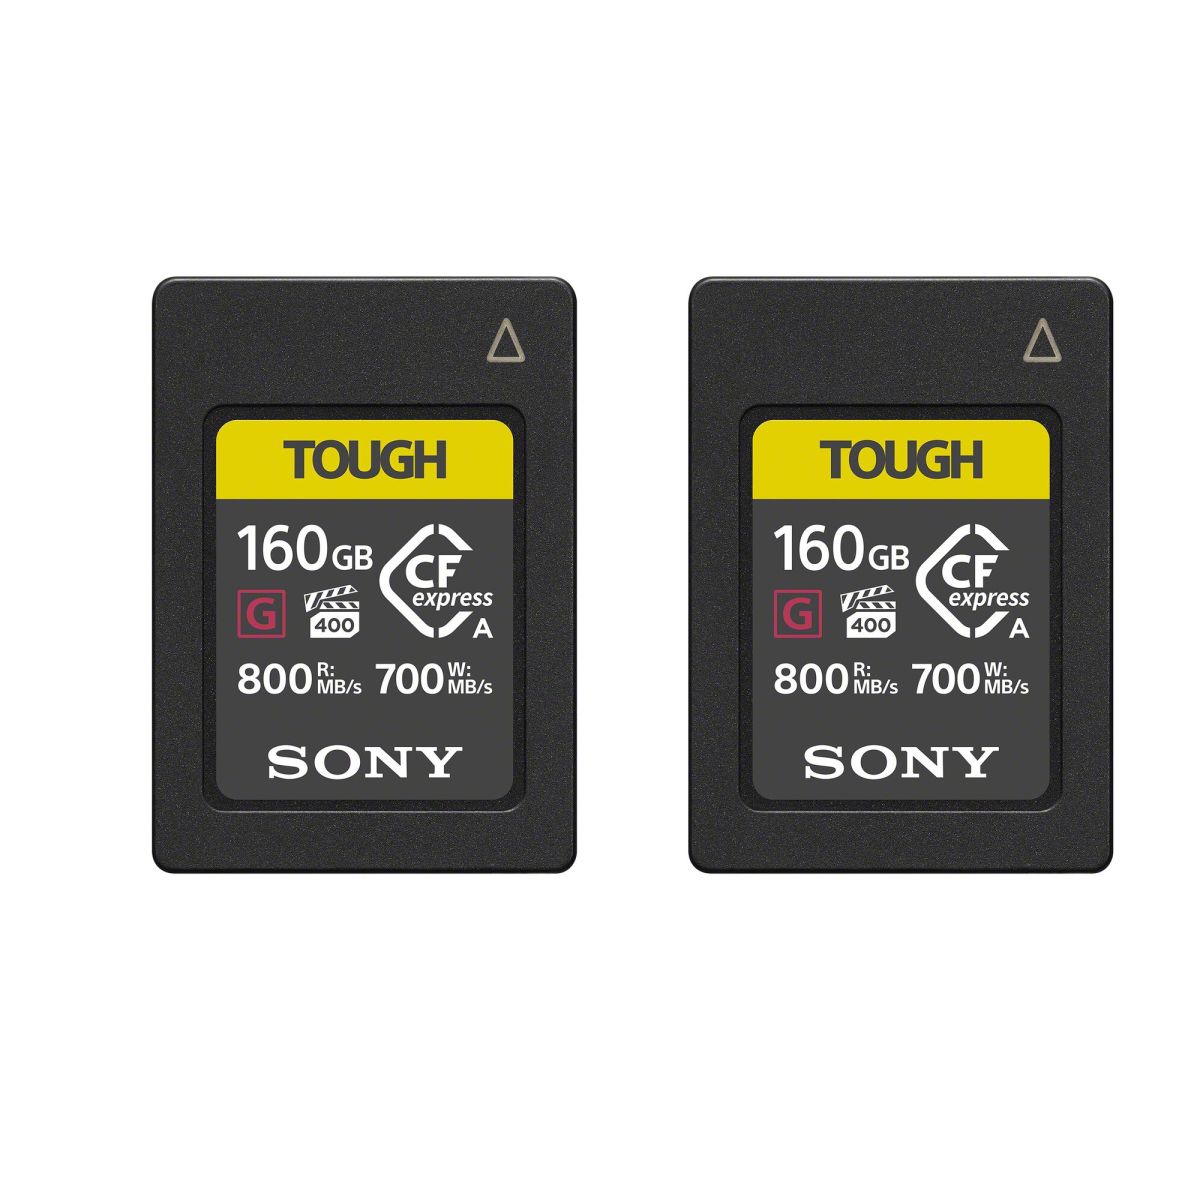 Sony DEUX Cartes Mémoire 160GB CFexpress Type A TOUGH